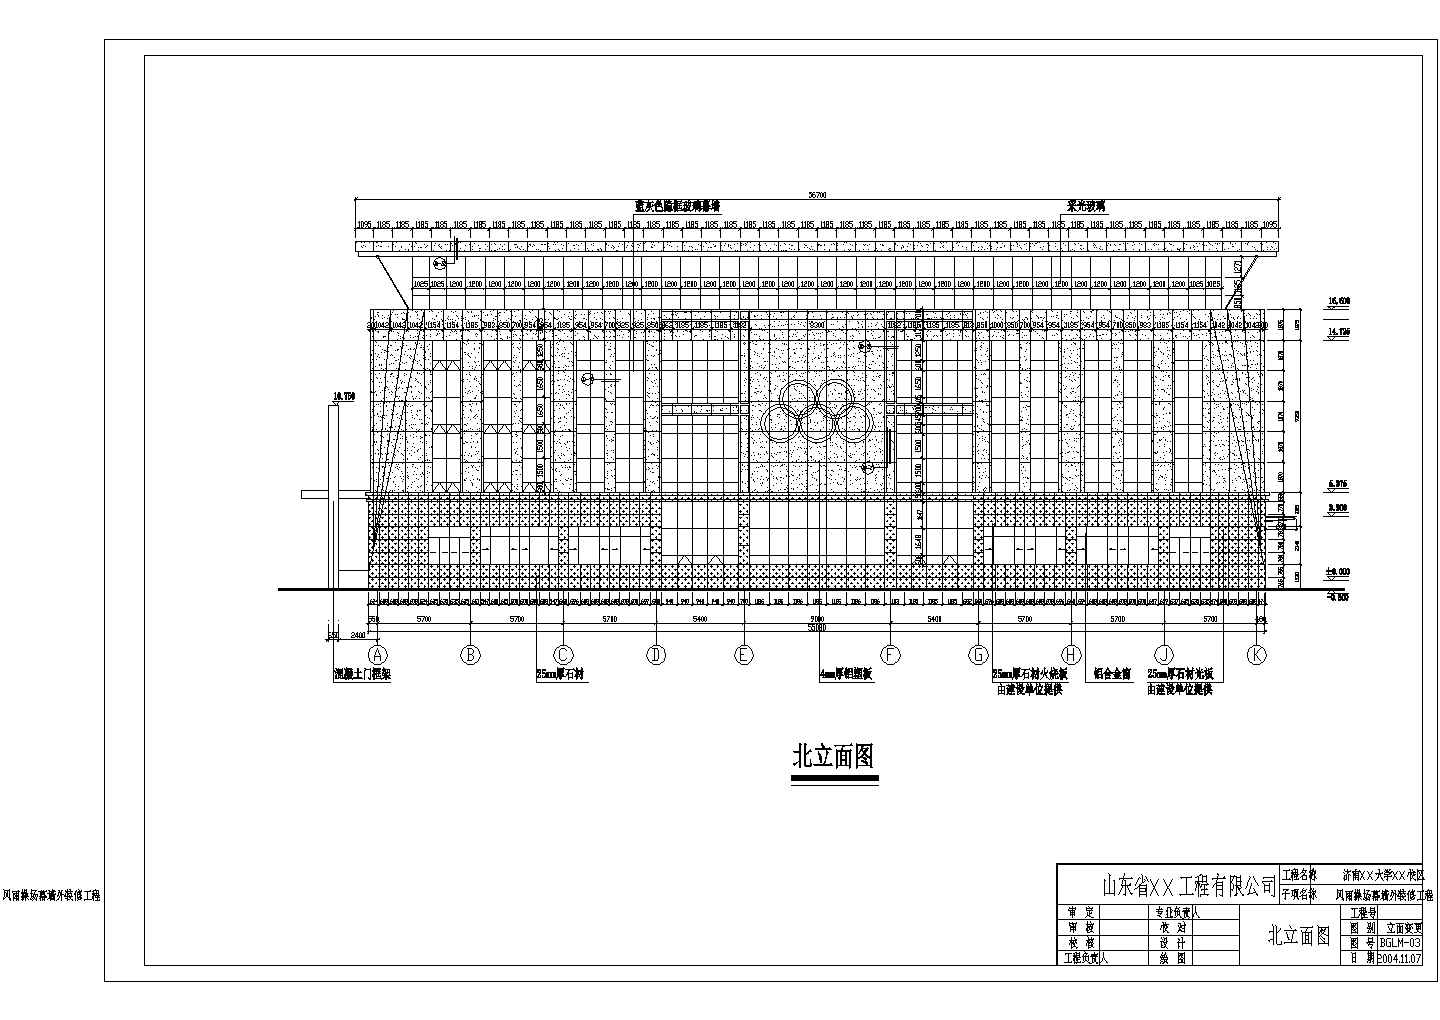 济南某大学风雨操场幕墙结构设计图(含幕墙计算书高21米)